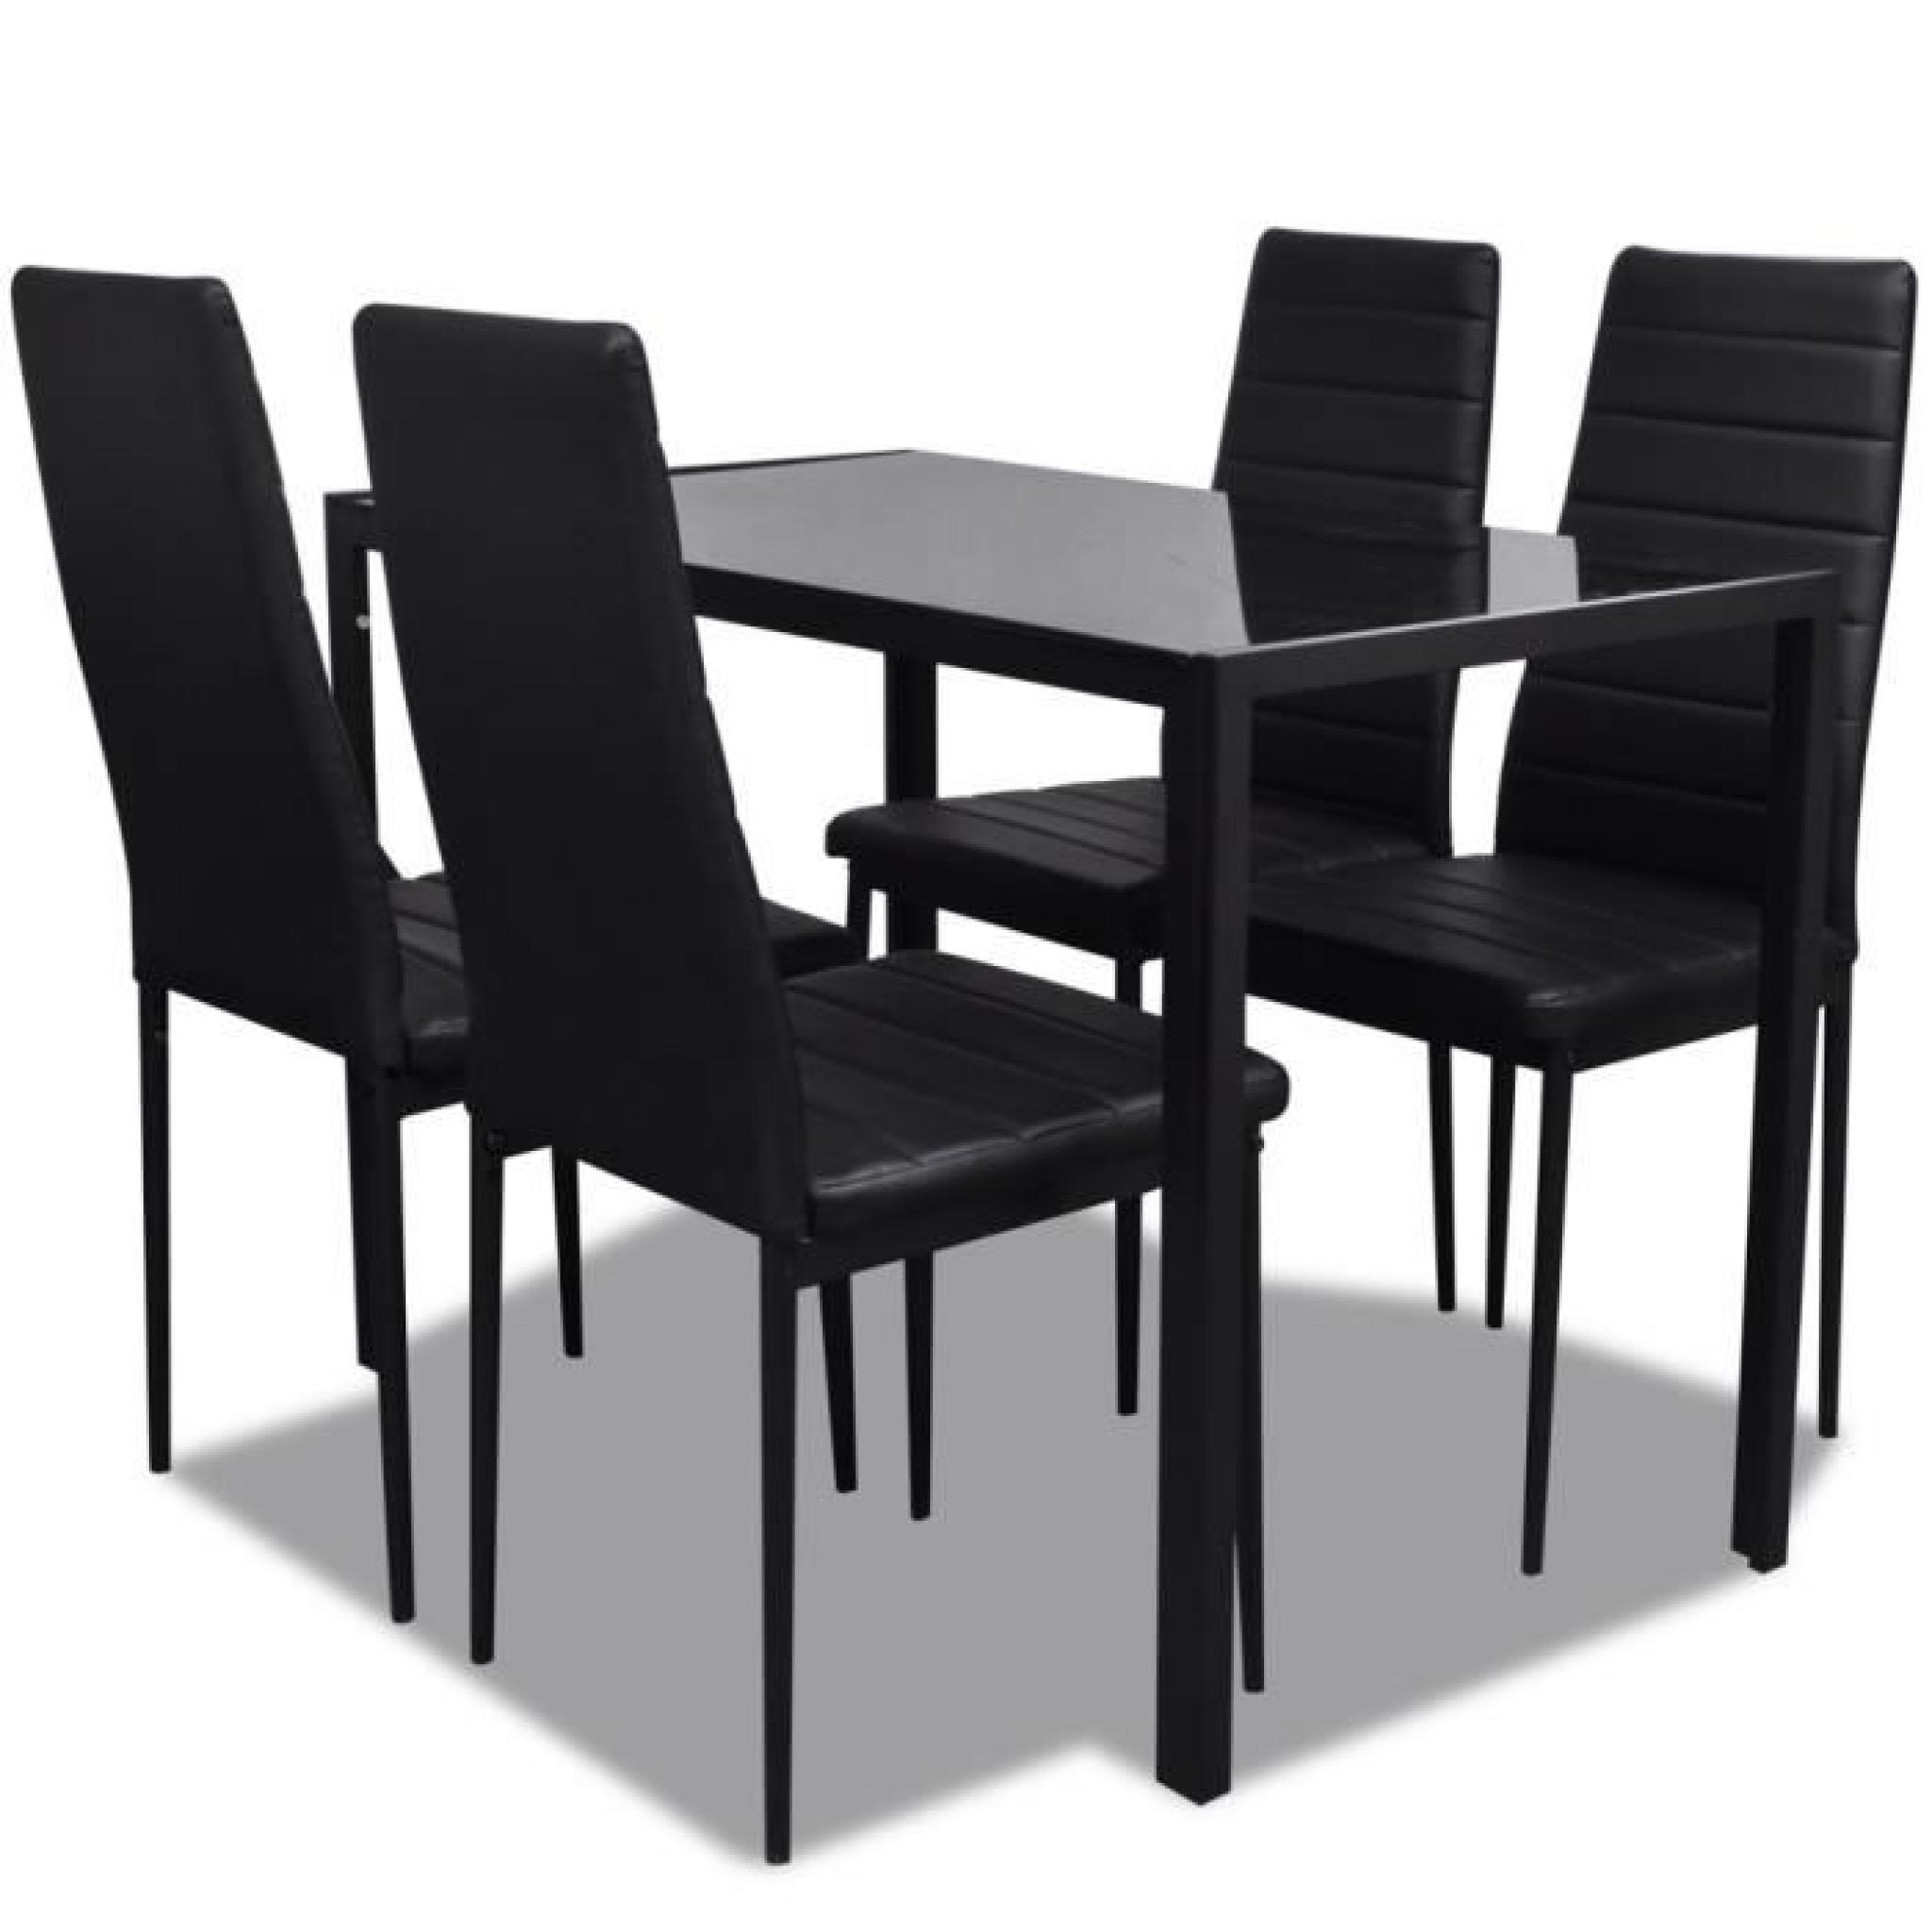 Table a manger avec 4 chaises aspect contemporain pas cher